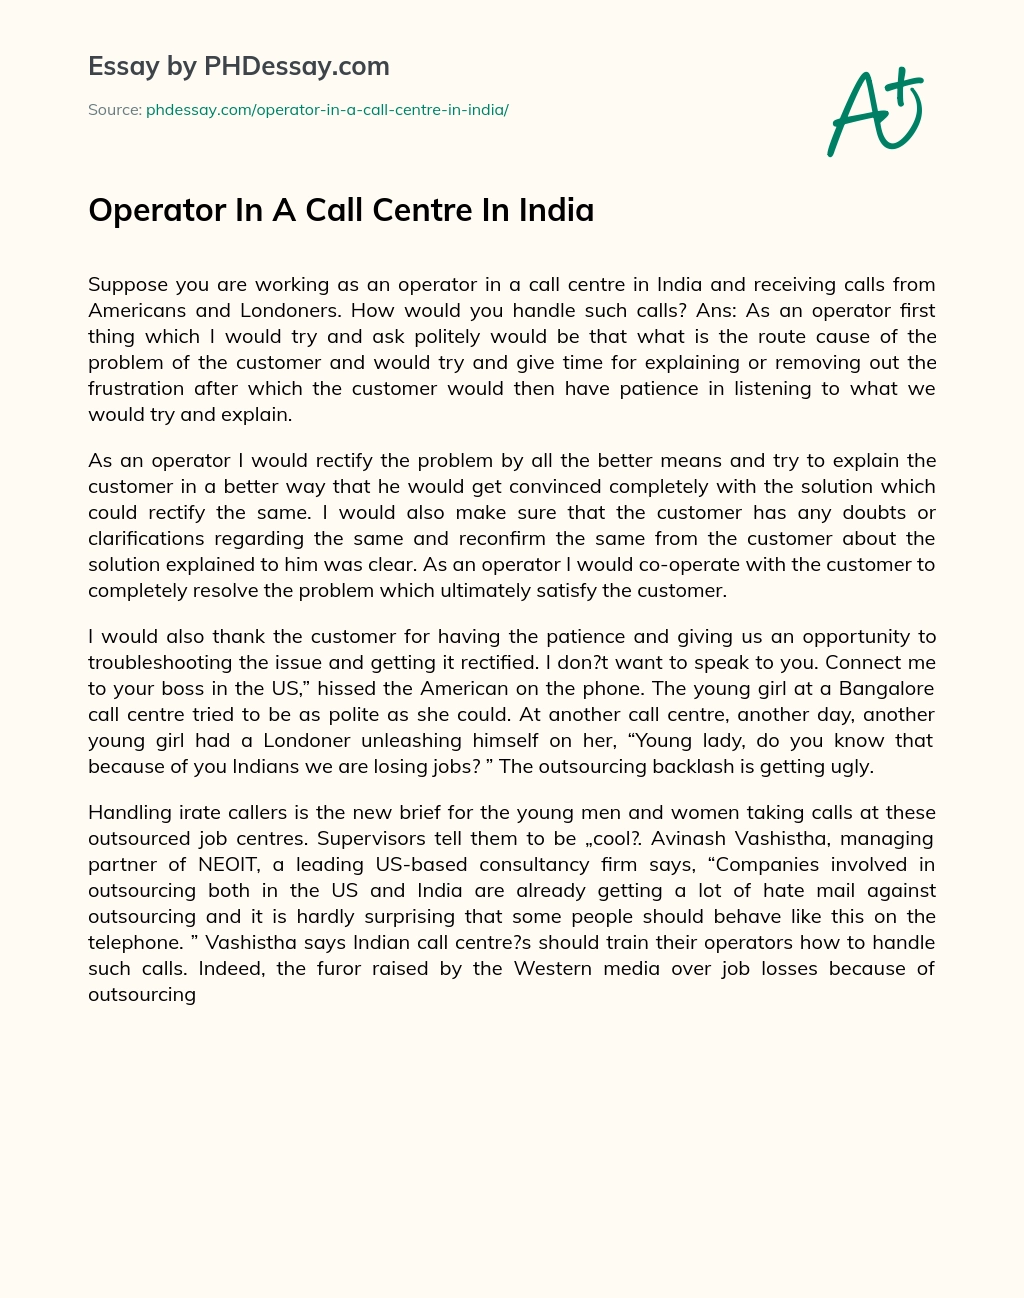 Operator In A Call Centre In India essay